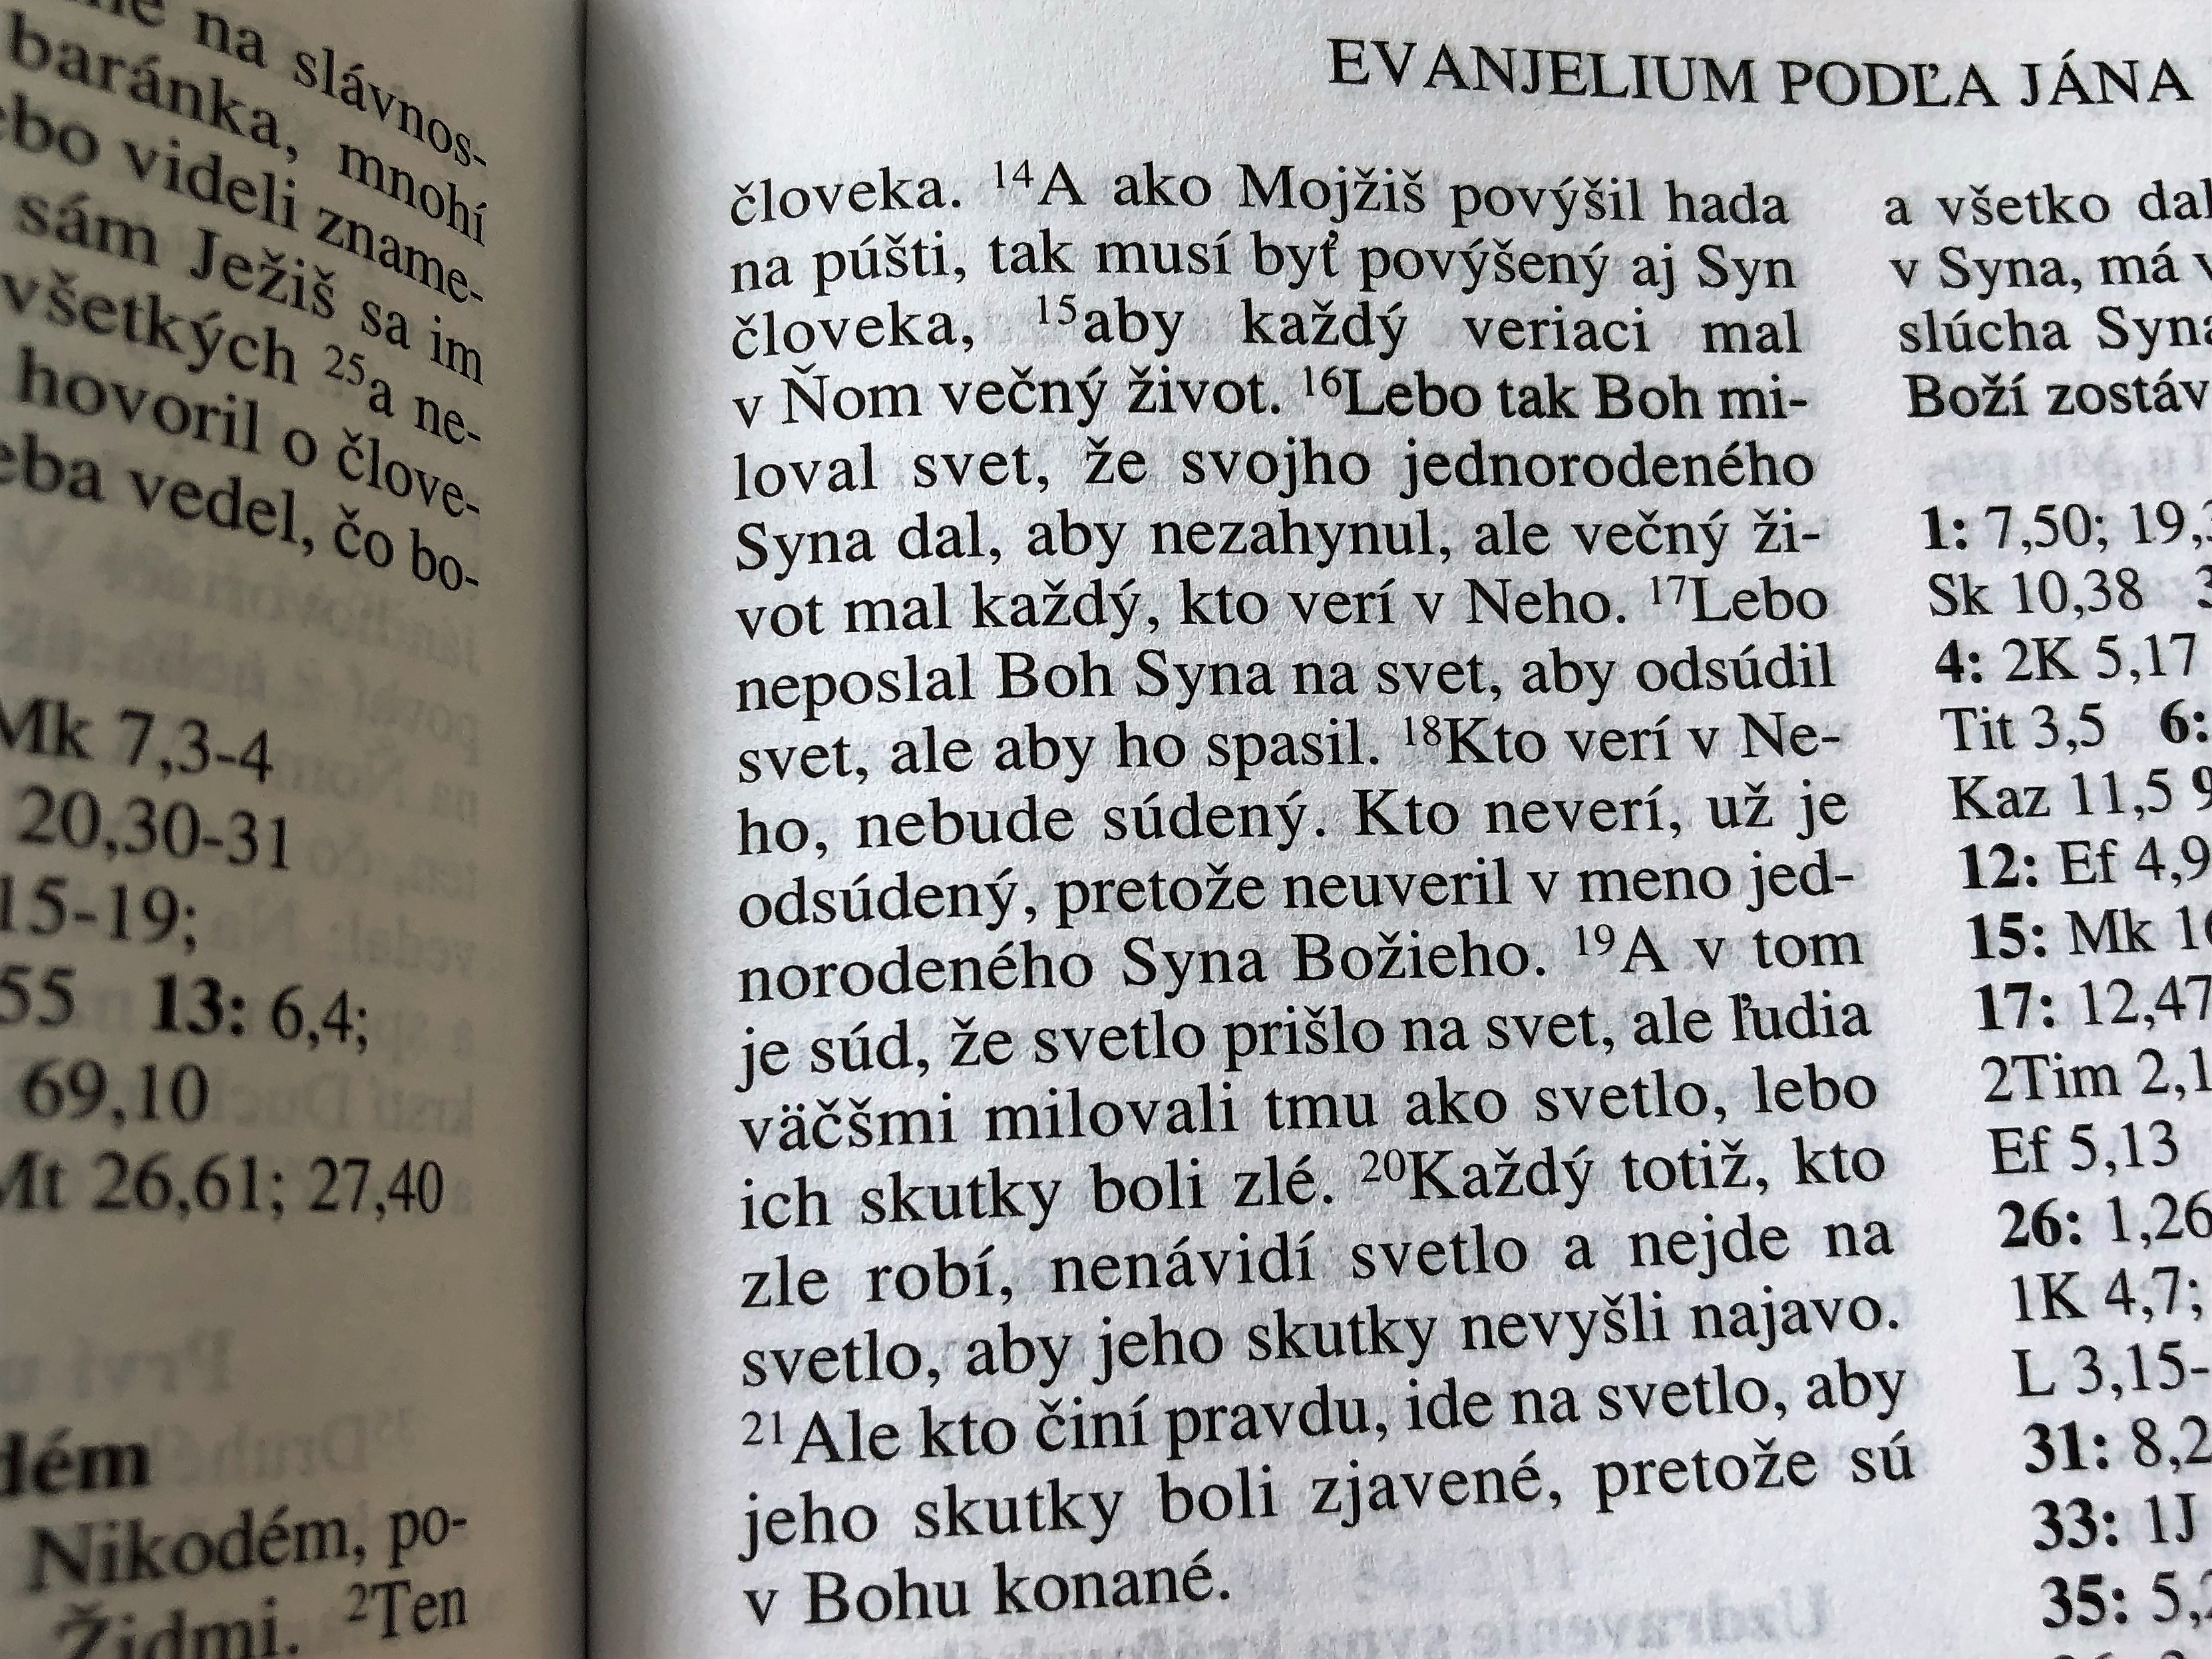 slovak-bible-slovakia-sloven-ina-17-.jpg